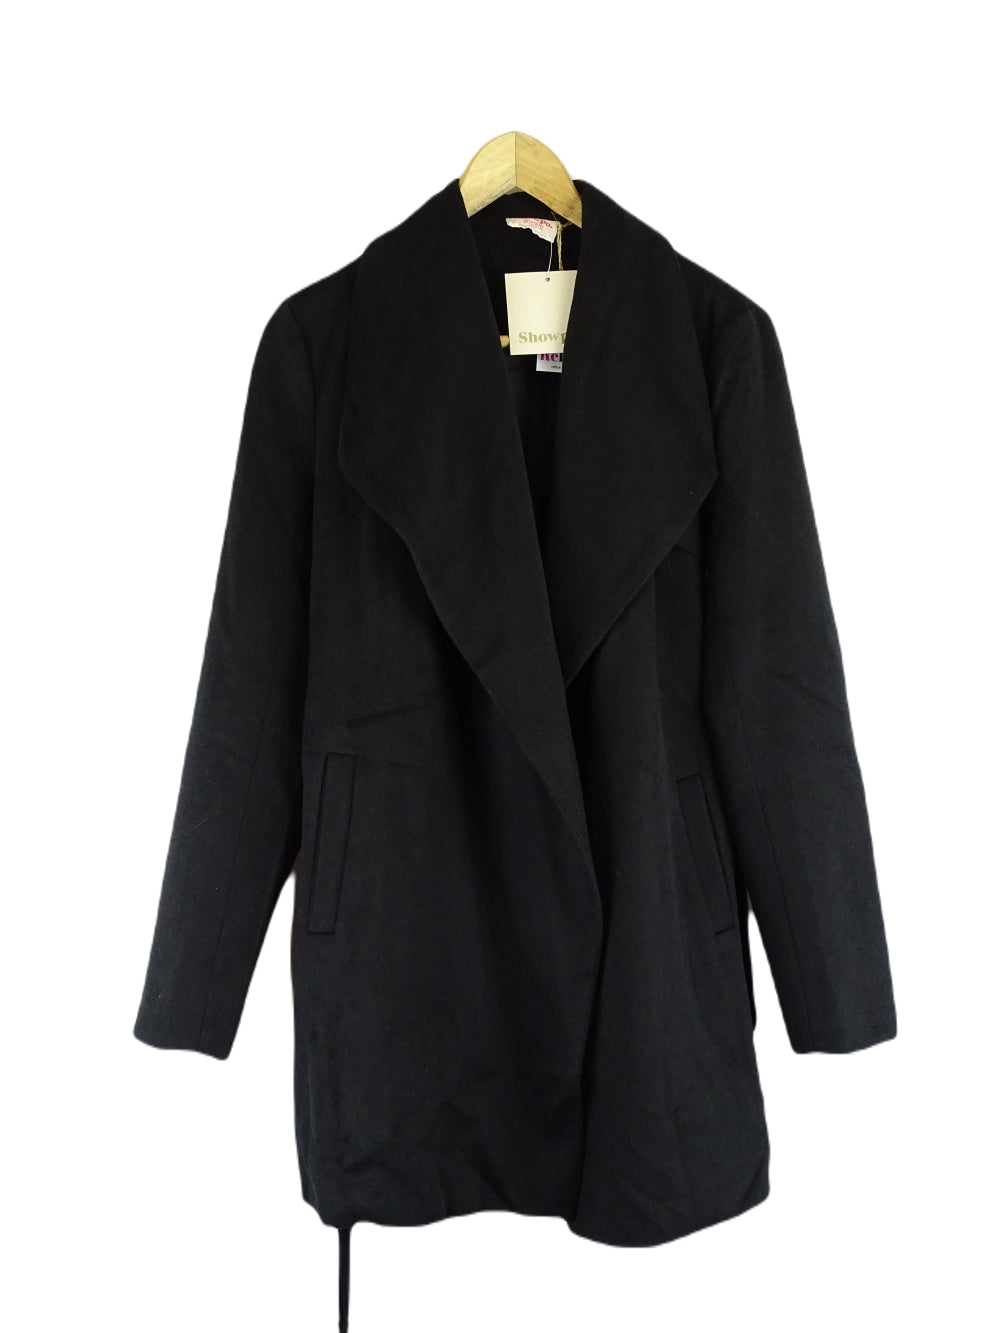 Showpo Black Coat 6